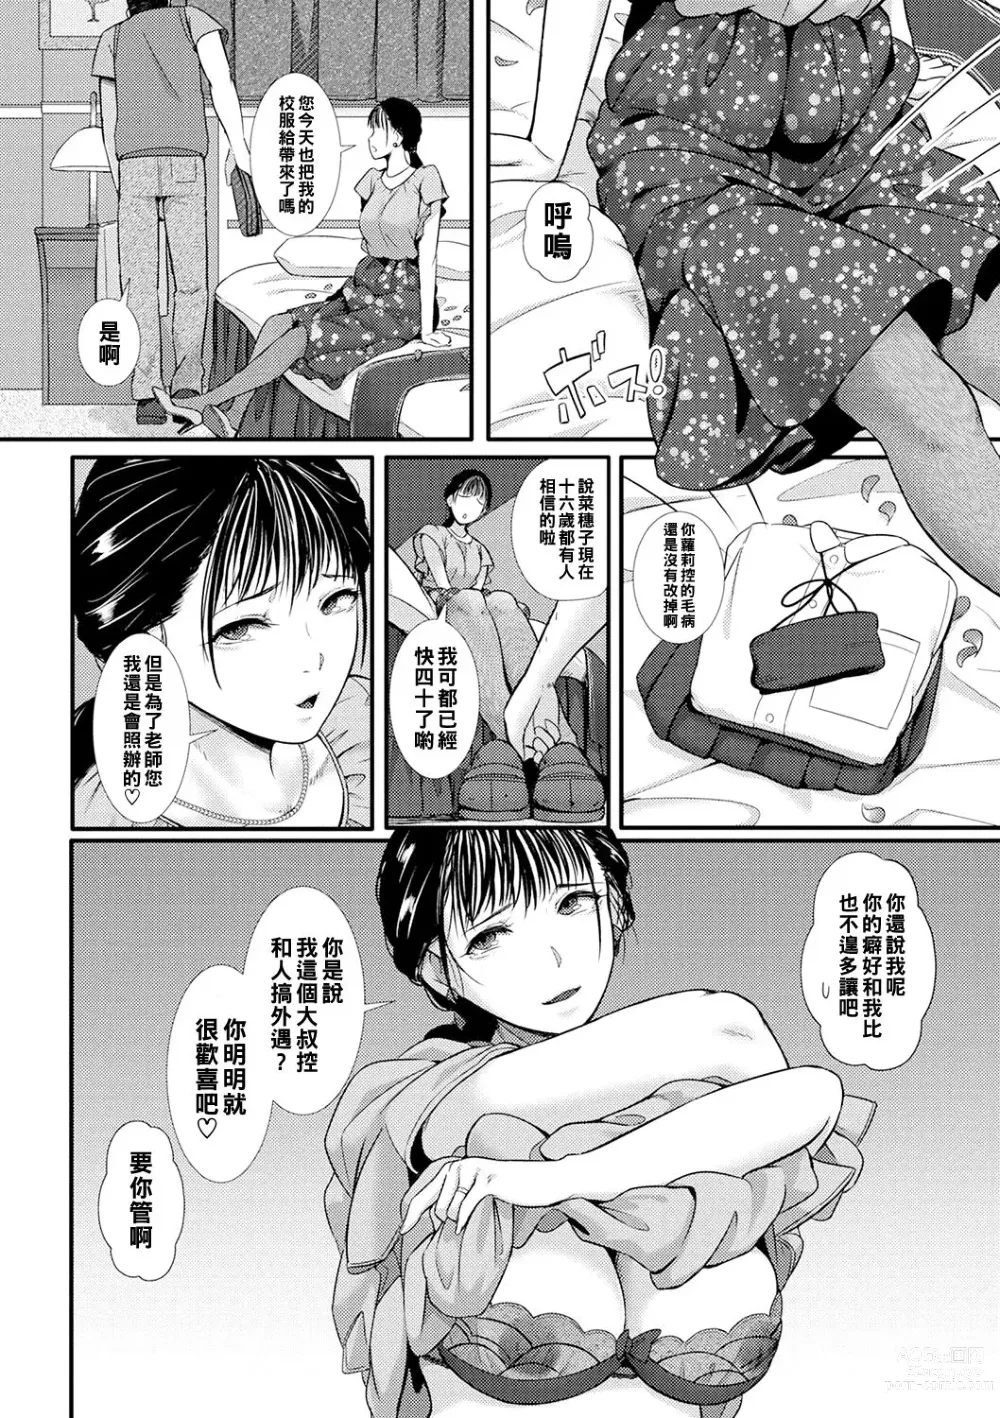 Page 2 of manga Akogare